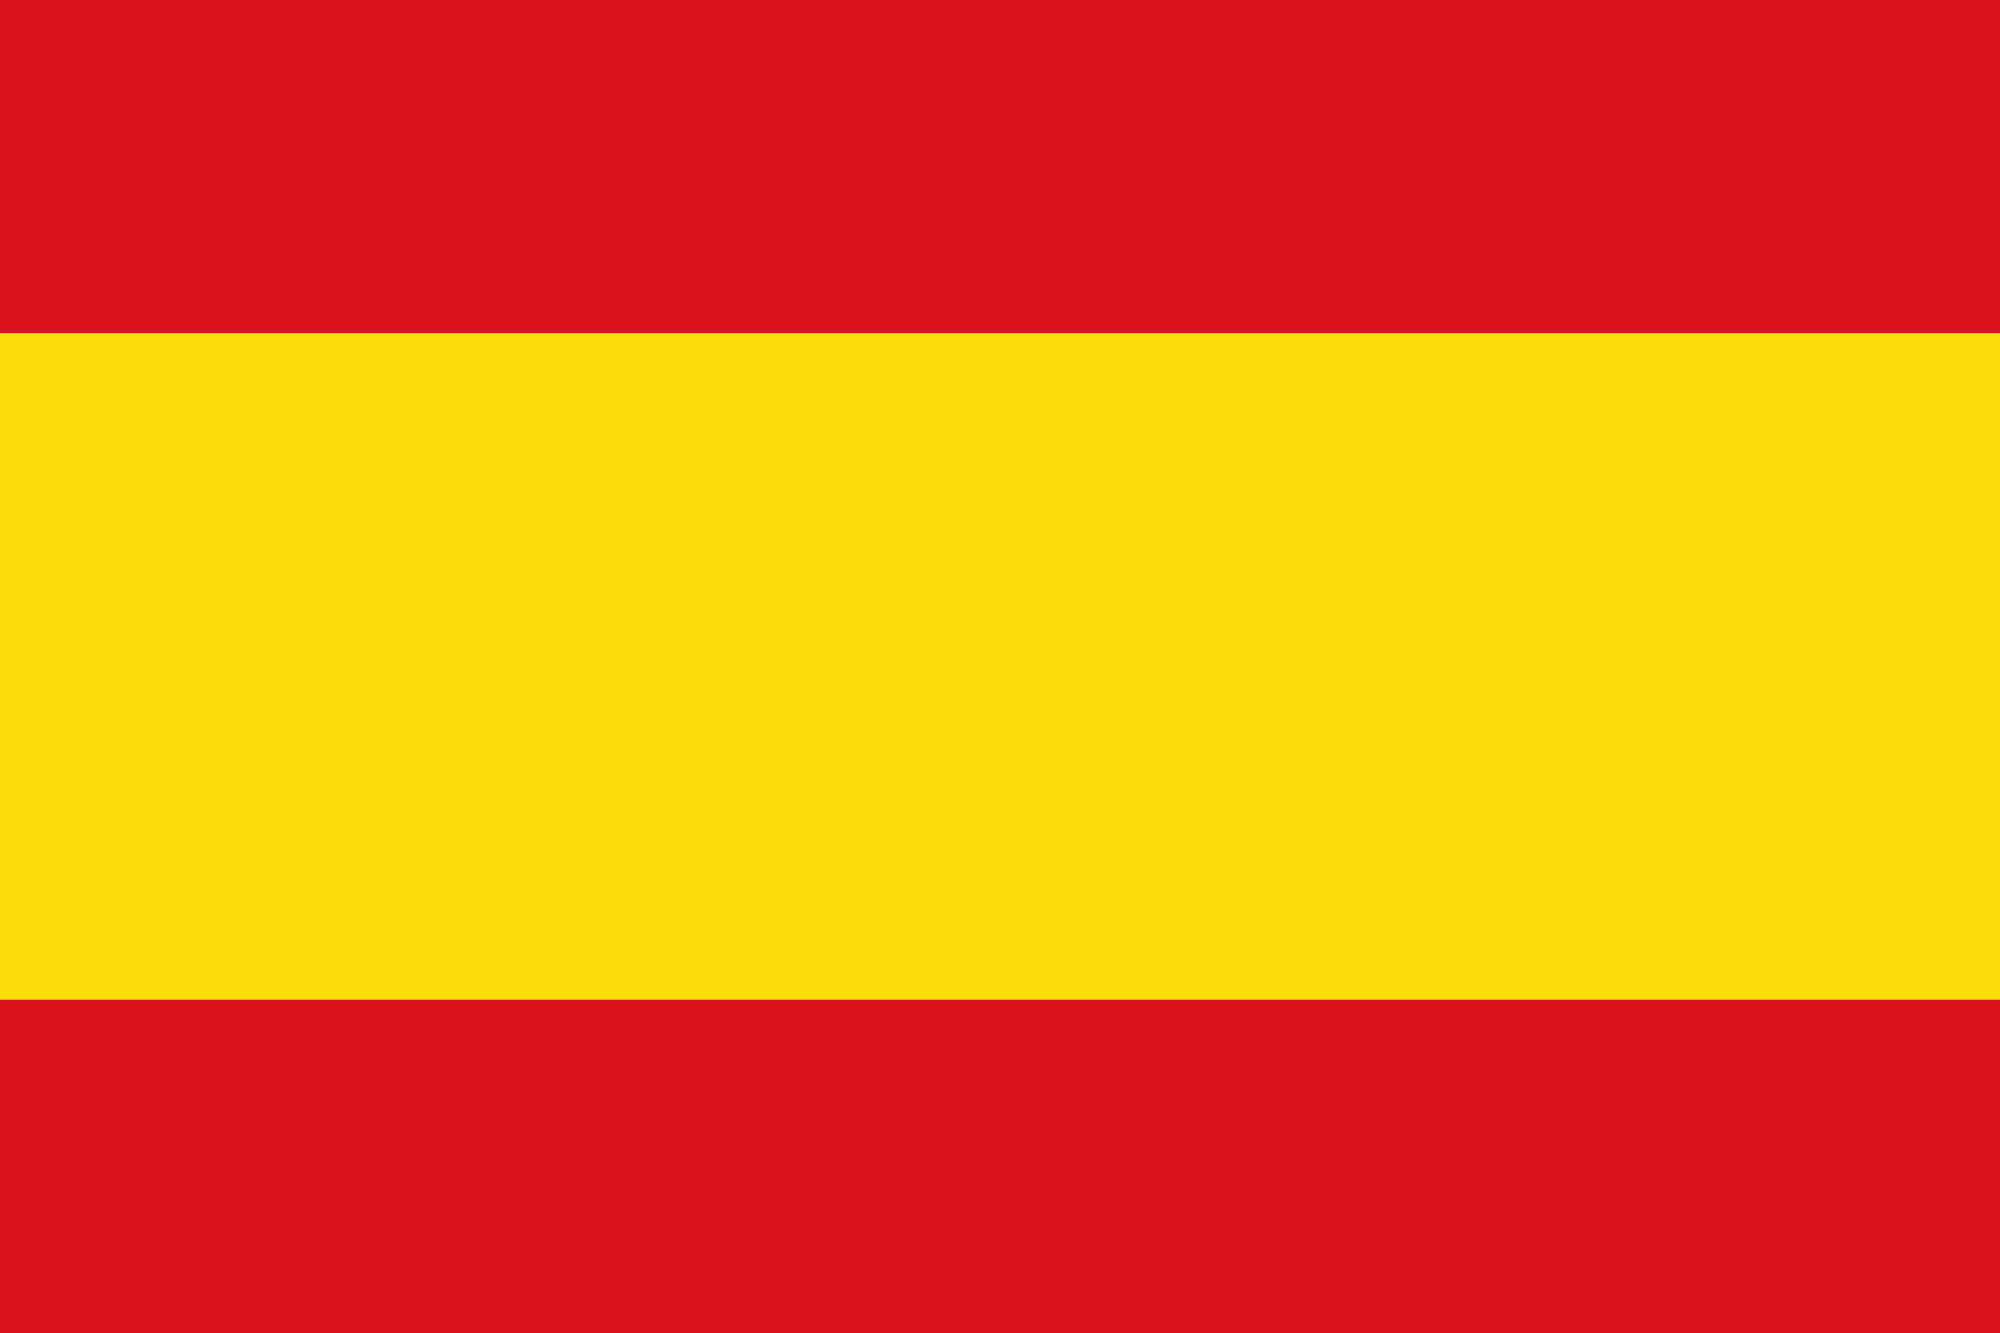 Spain Flag Wallpaper, Descarga de fondos de pantalla, (43) - accomodations.asia